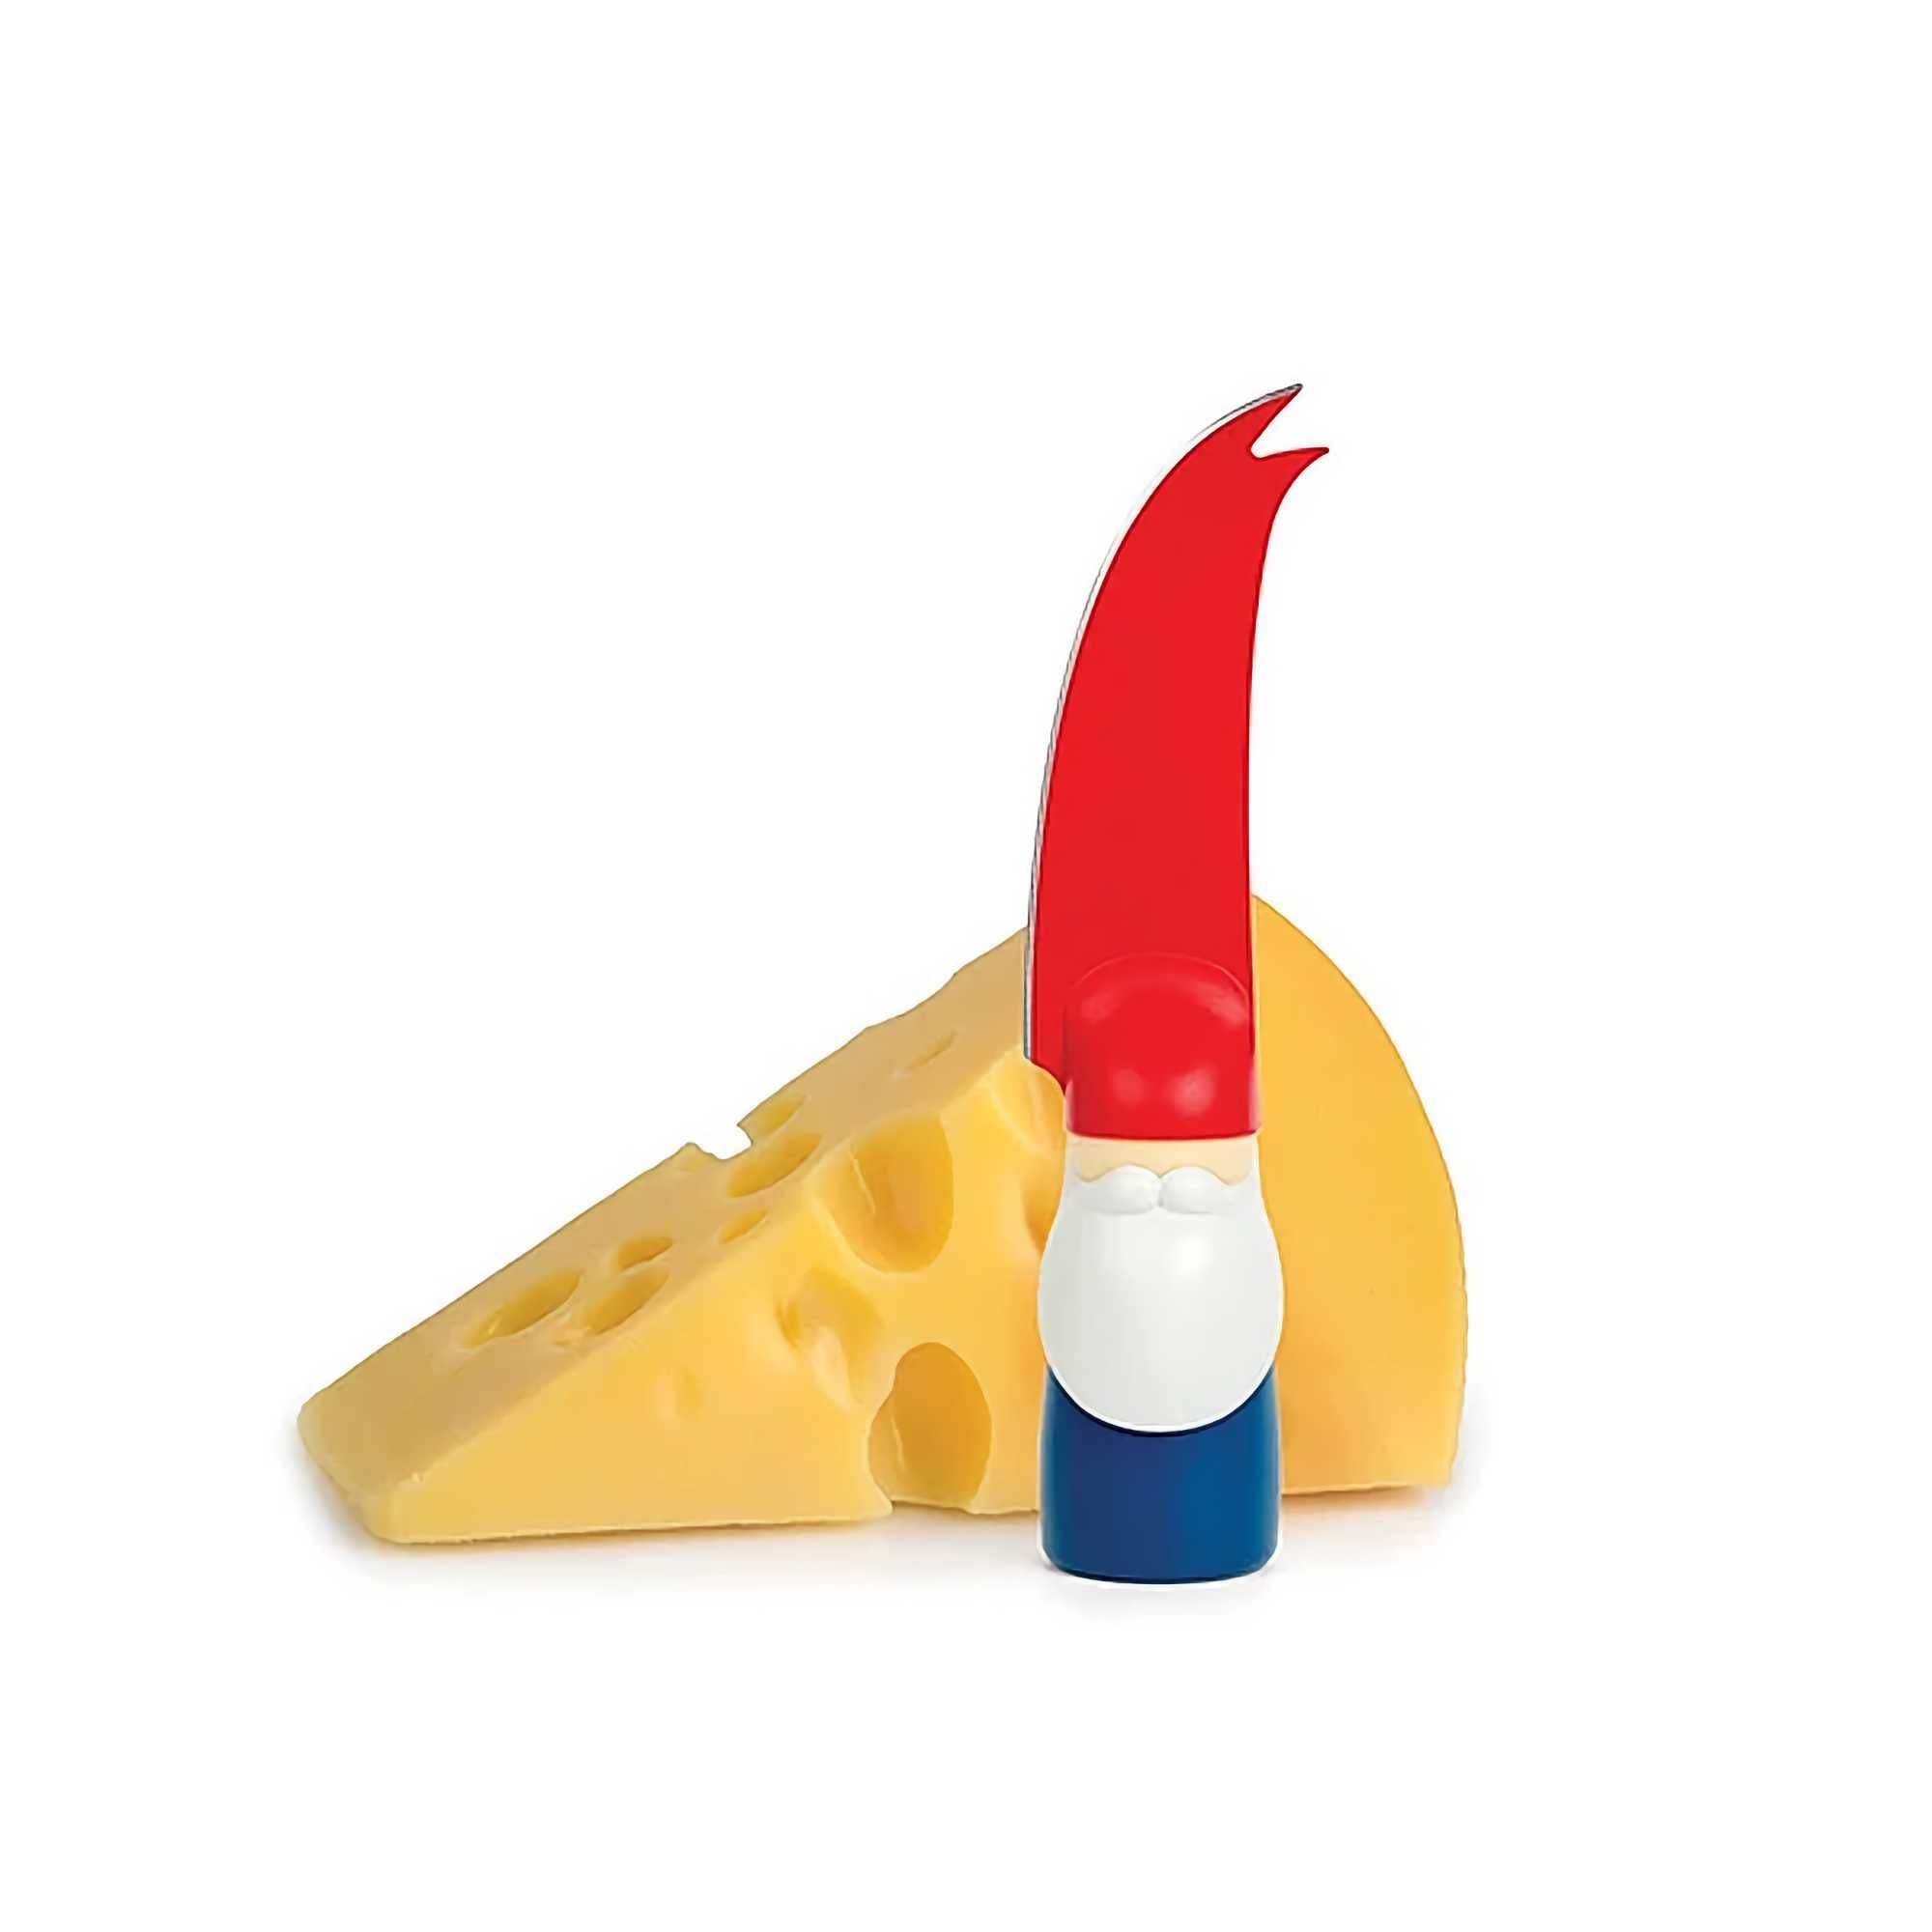 Ototo Design Bert cheese knife